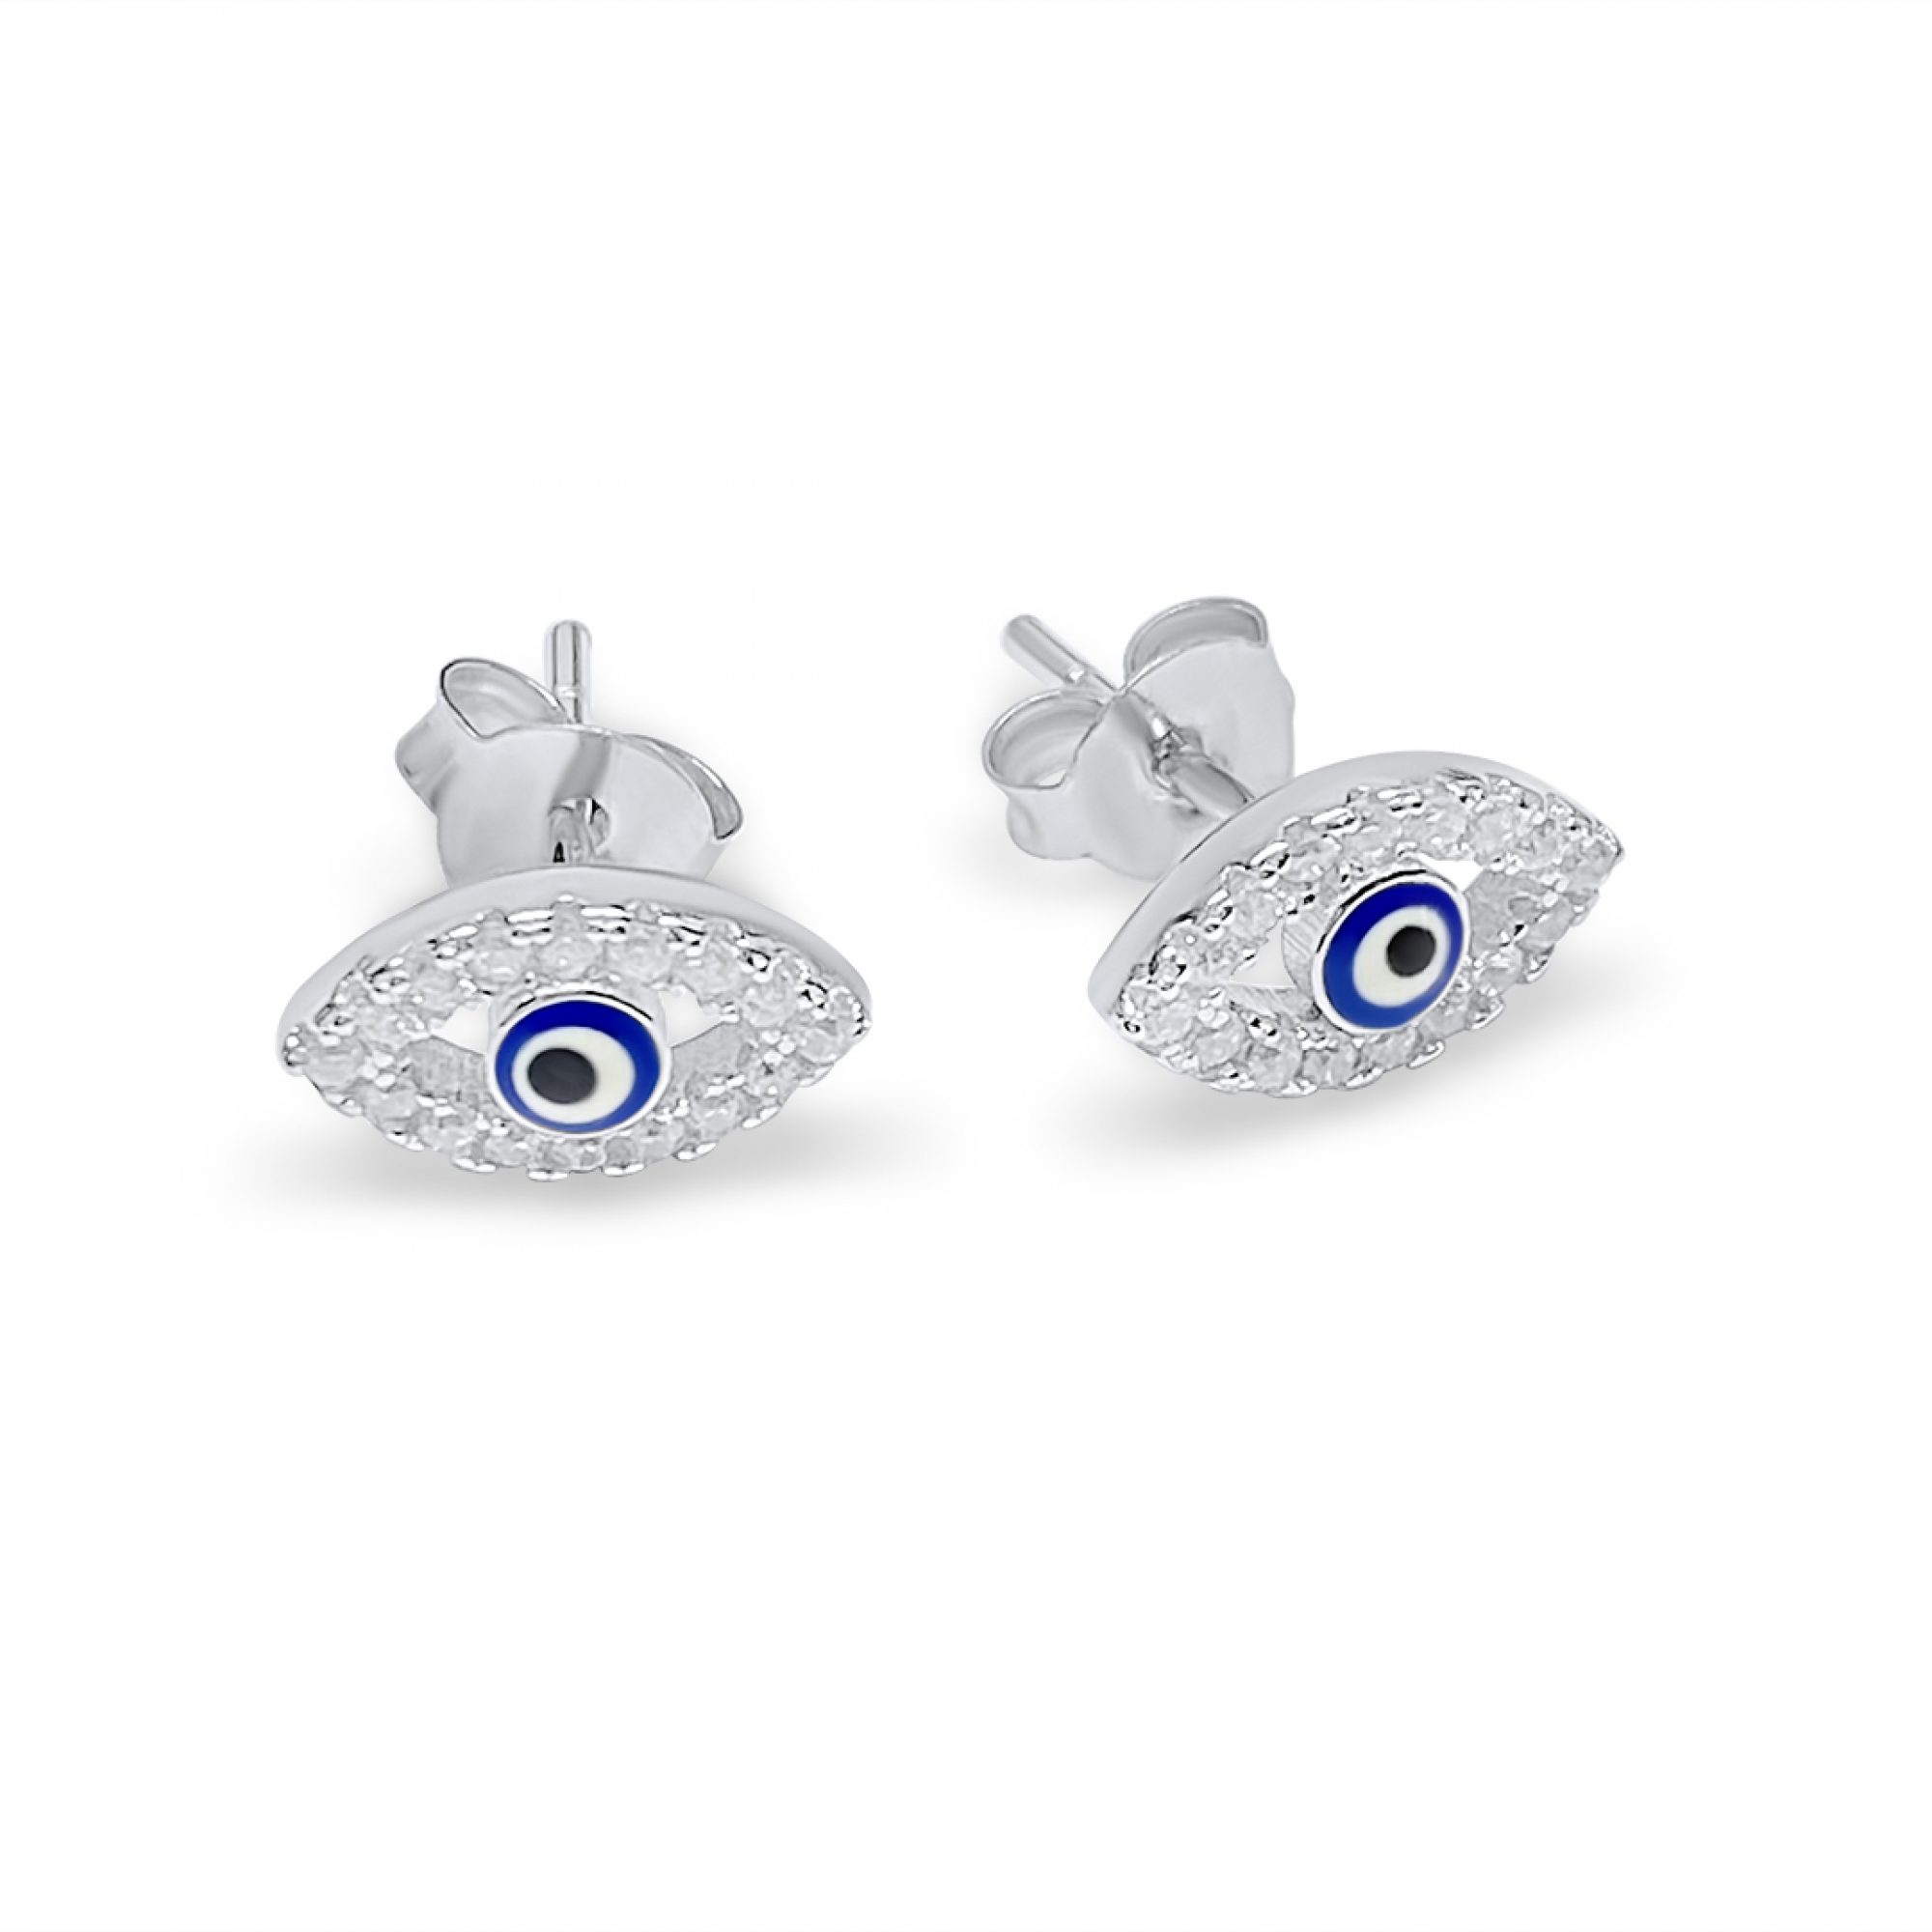 Eye stud earrings with zircon stones